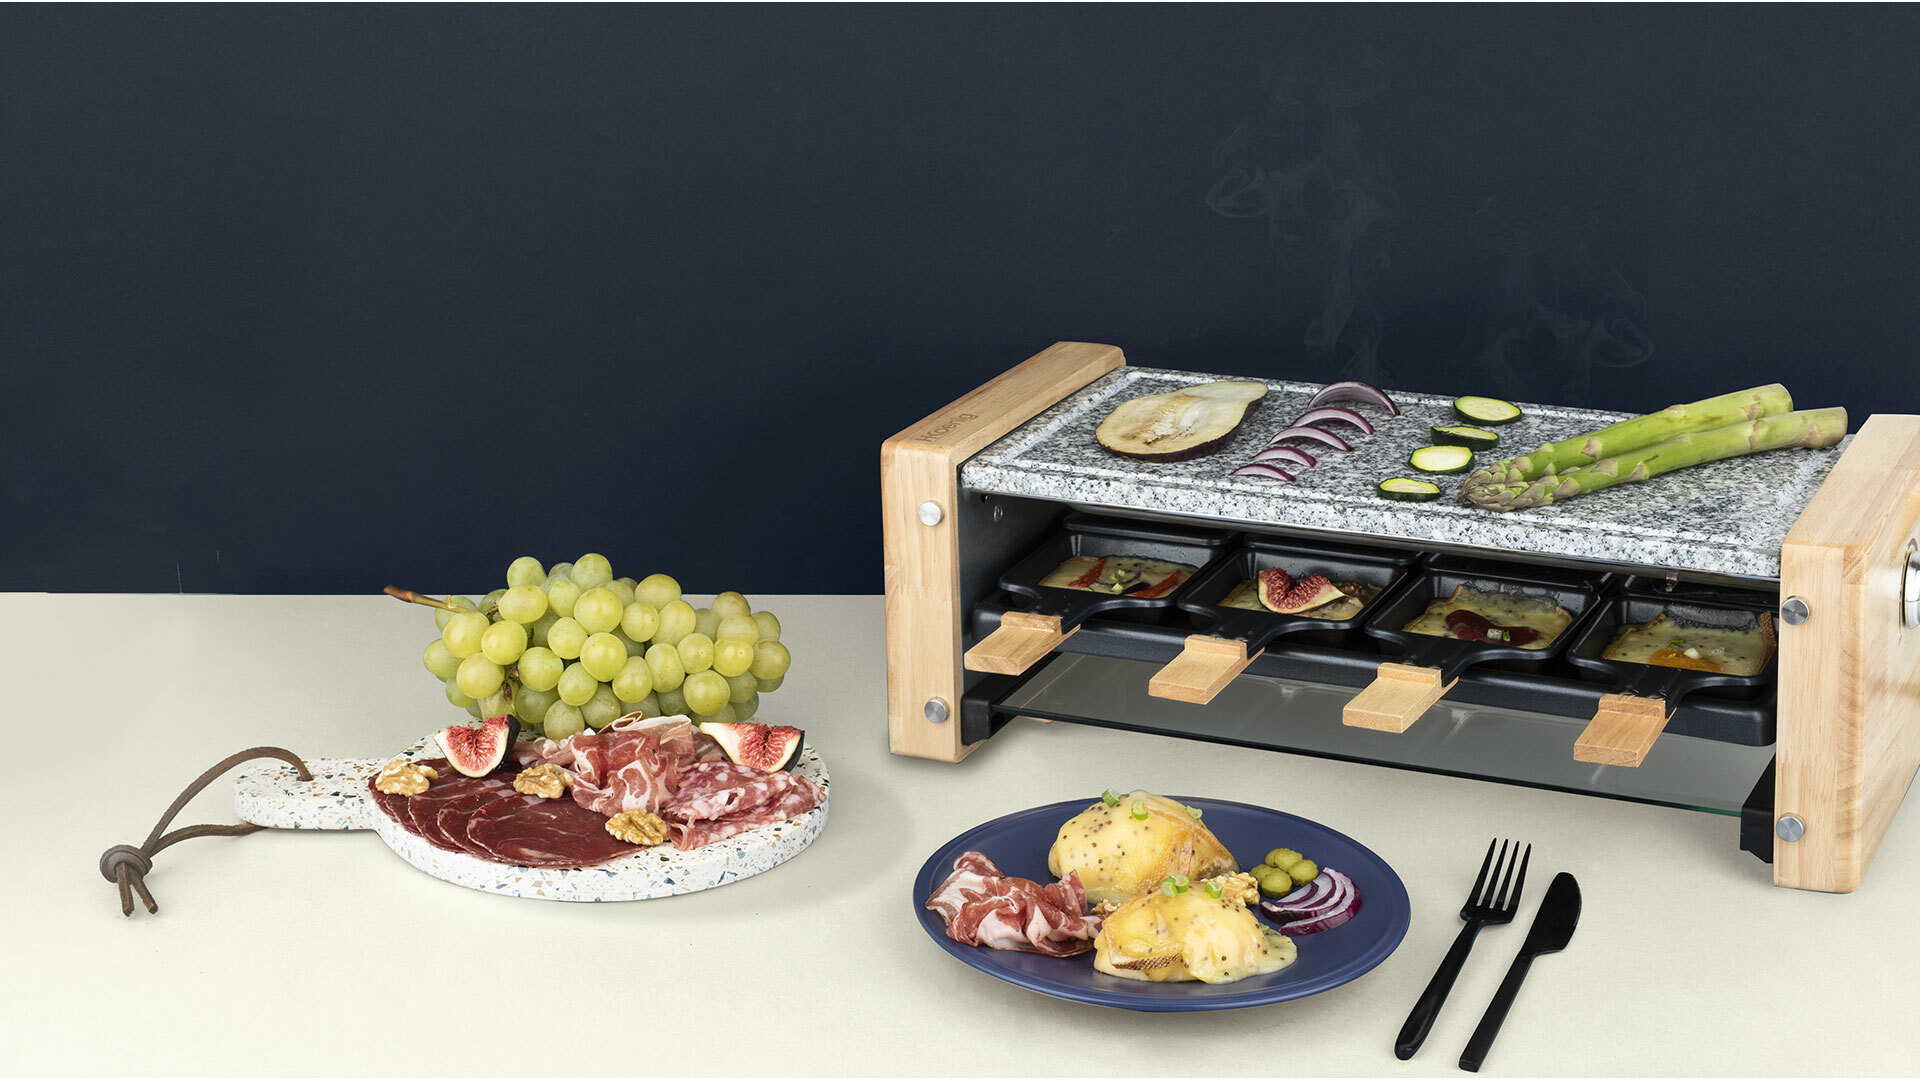 Nuestros productos > Cocina divertida > raclette 4 en 1 convivial design  : Koenig - ES